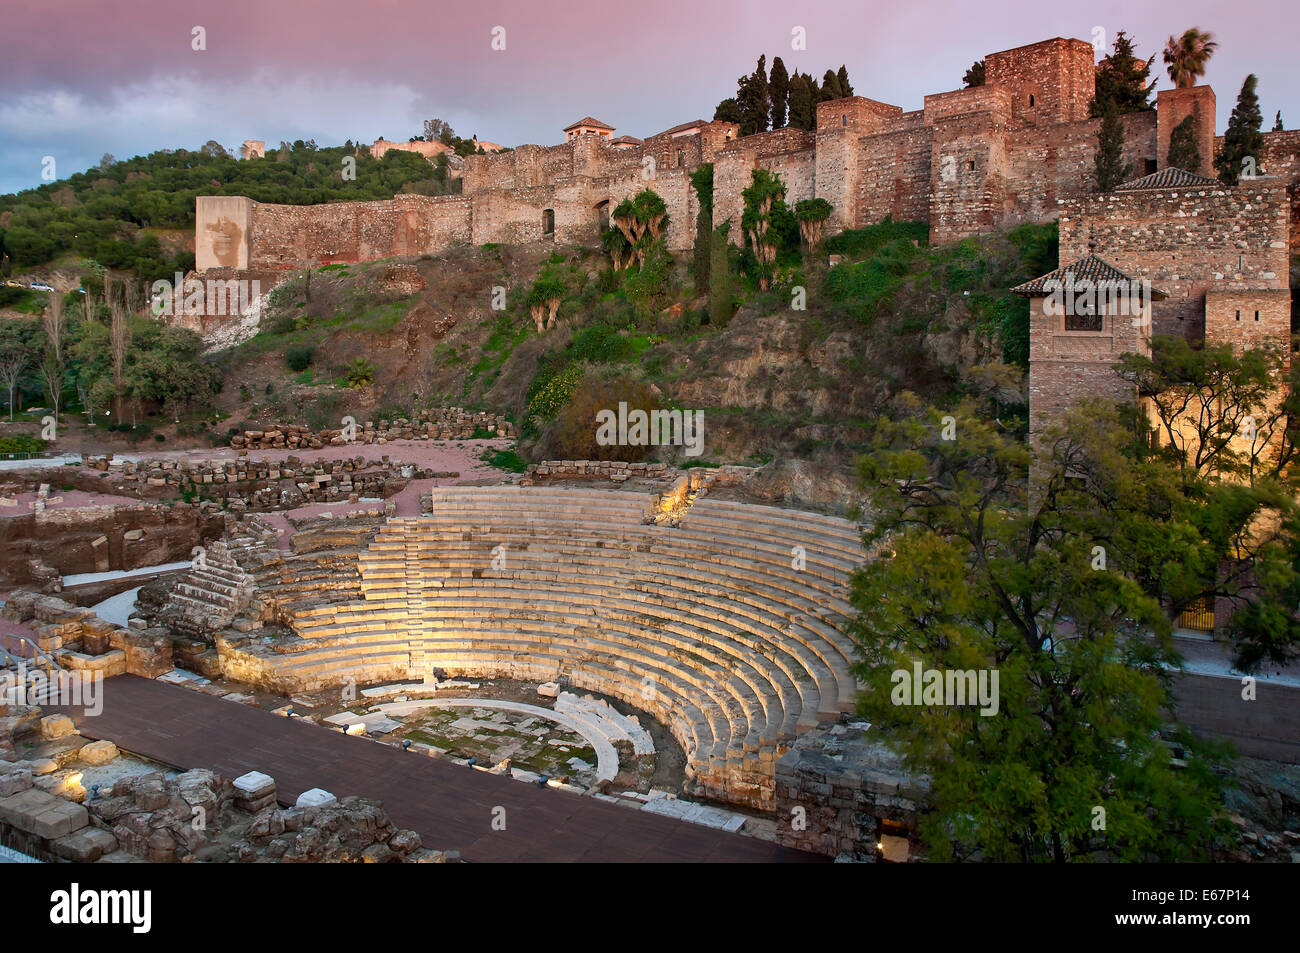 Théâtre romain et l'Alcazaba Arabe, Malaga, Andalousie, Espagne, Europe Banque D'Images